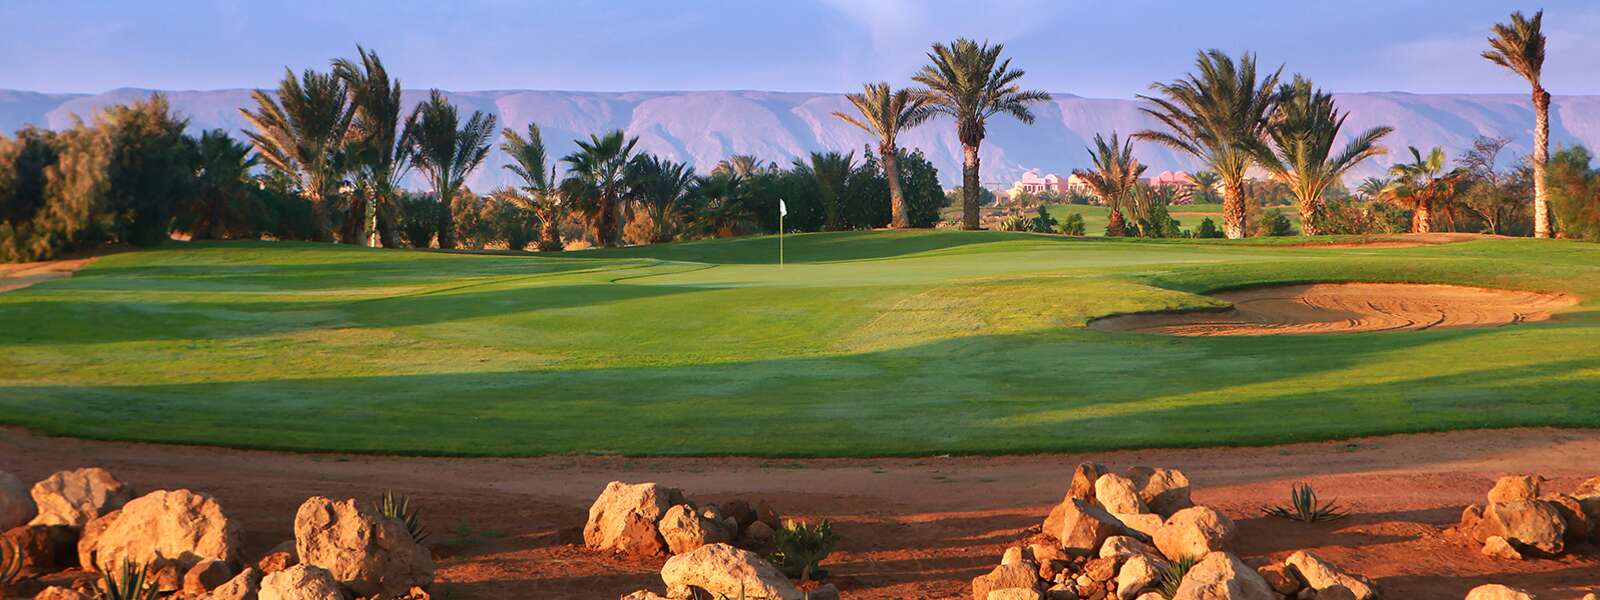 Golfreisen nach Ägypten 